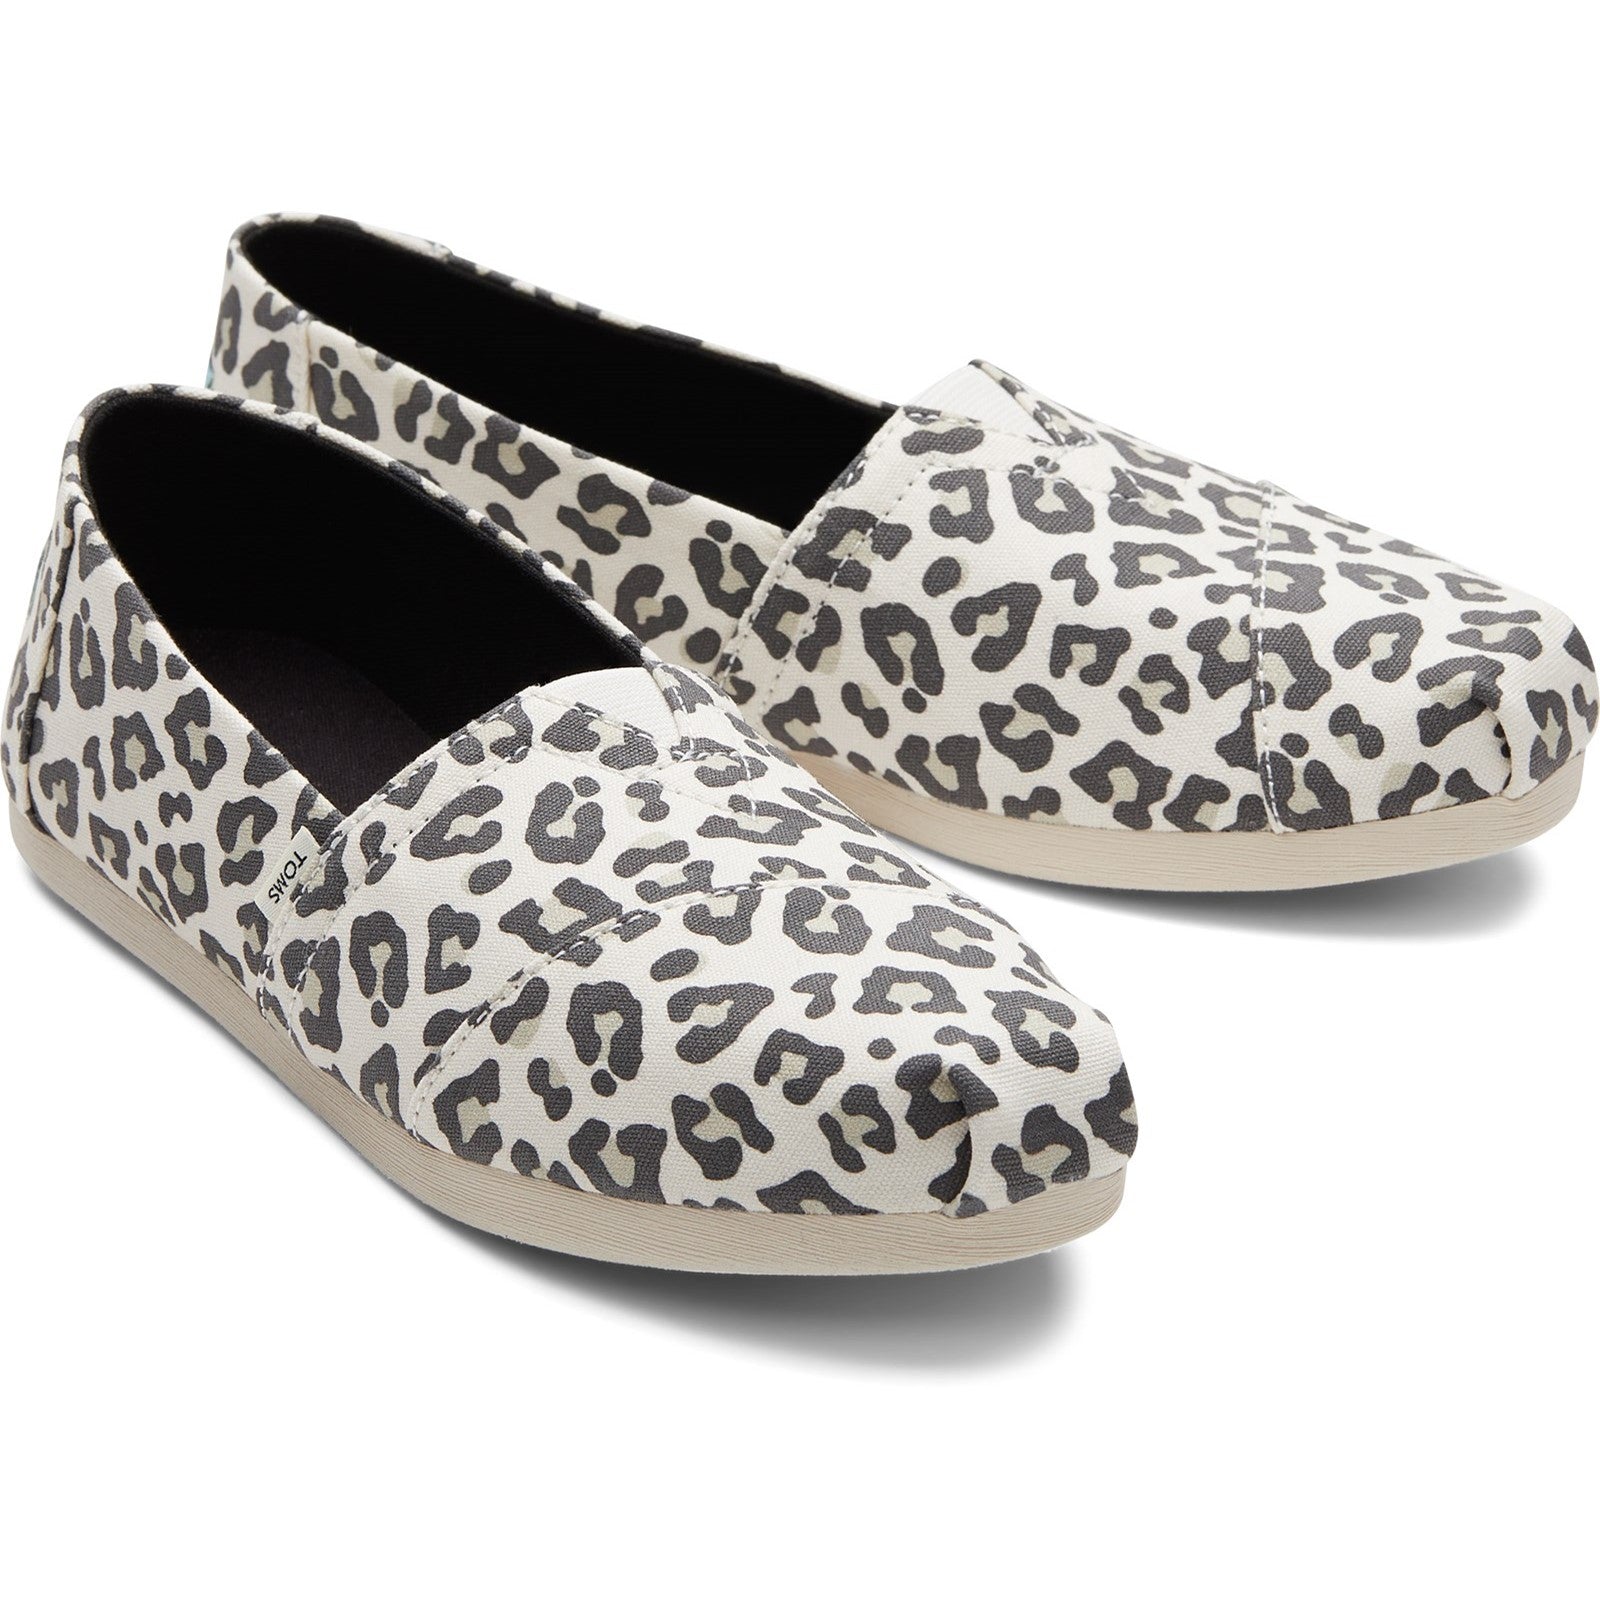 Toms Alpargata 10017747 Ladies Snow Leopard Textile Vegan Slip On Shoes